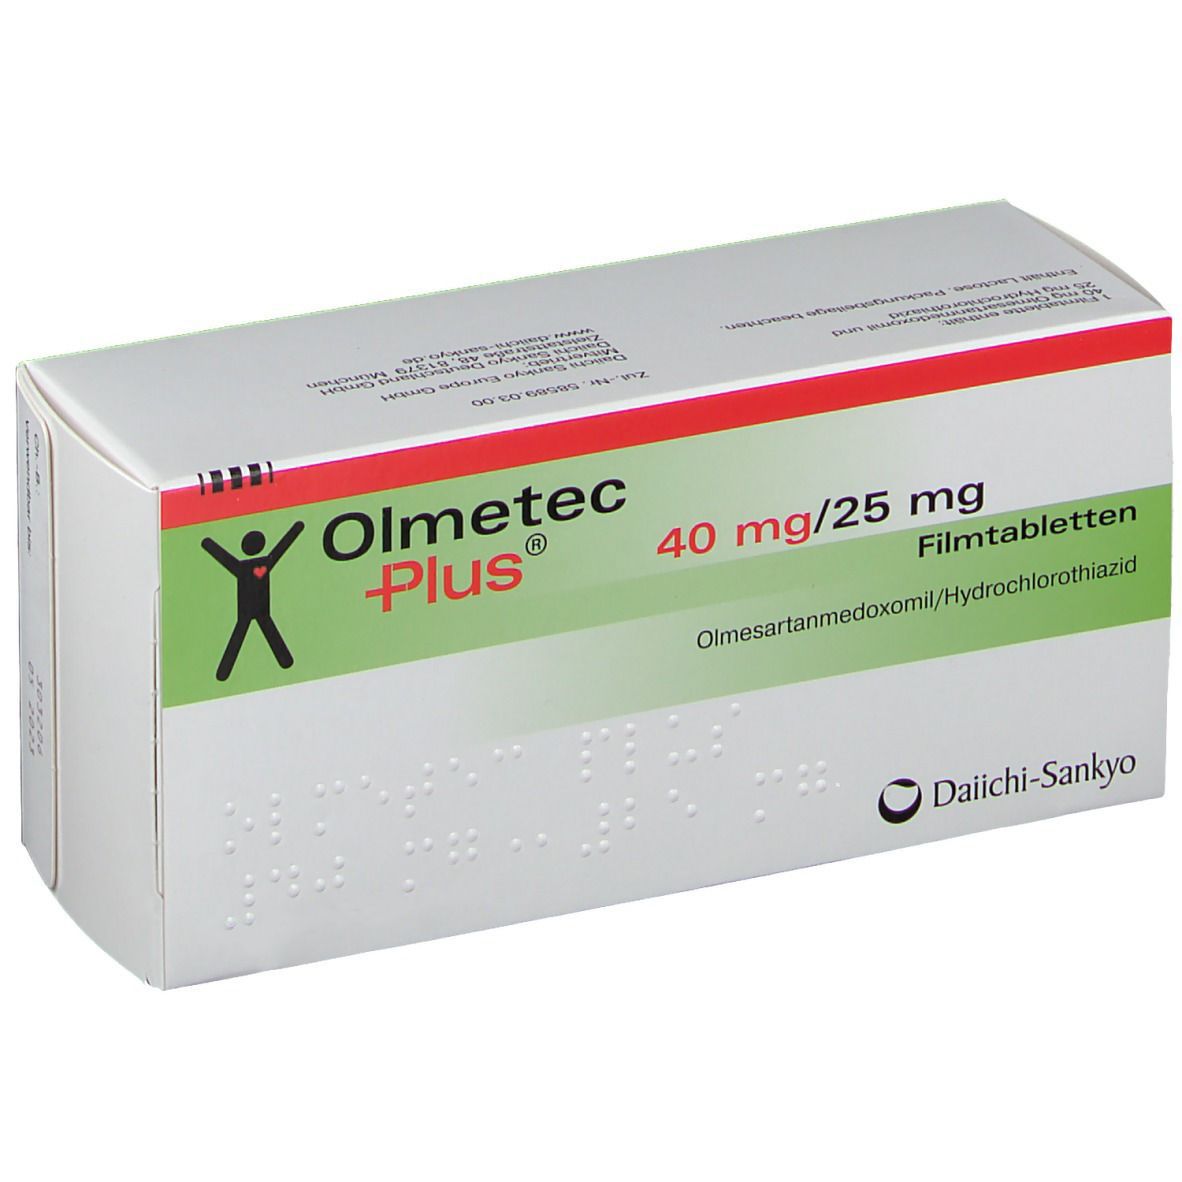 Olmetec Plus® 40 mg/25 mg